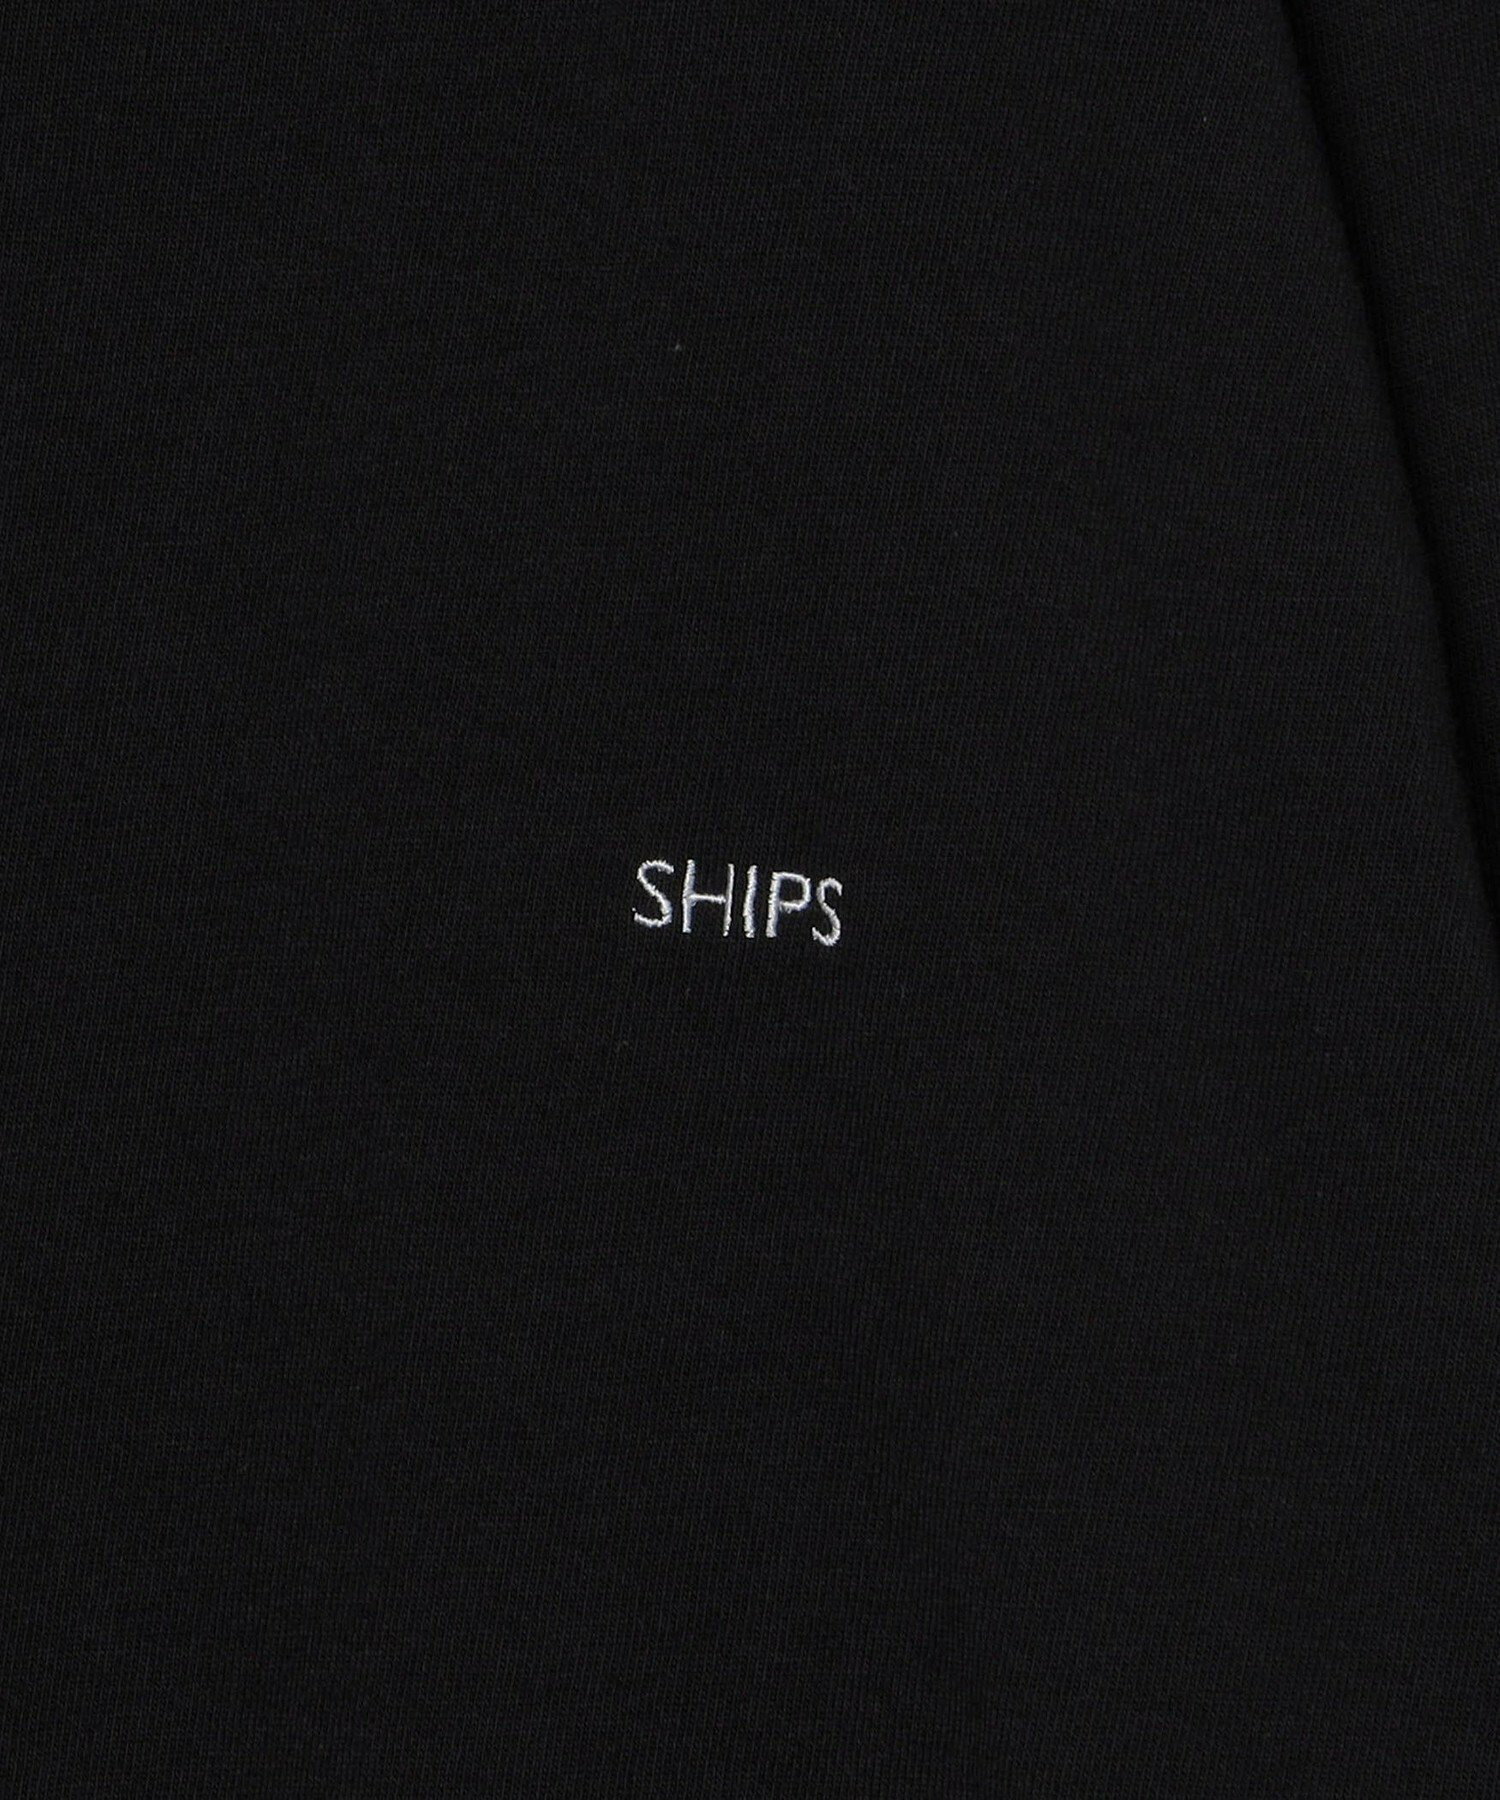 *SHIPS: ワンポイント マイクロ SHIPSロゴ ロングスリーブ Tシャツ (ロンT)